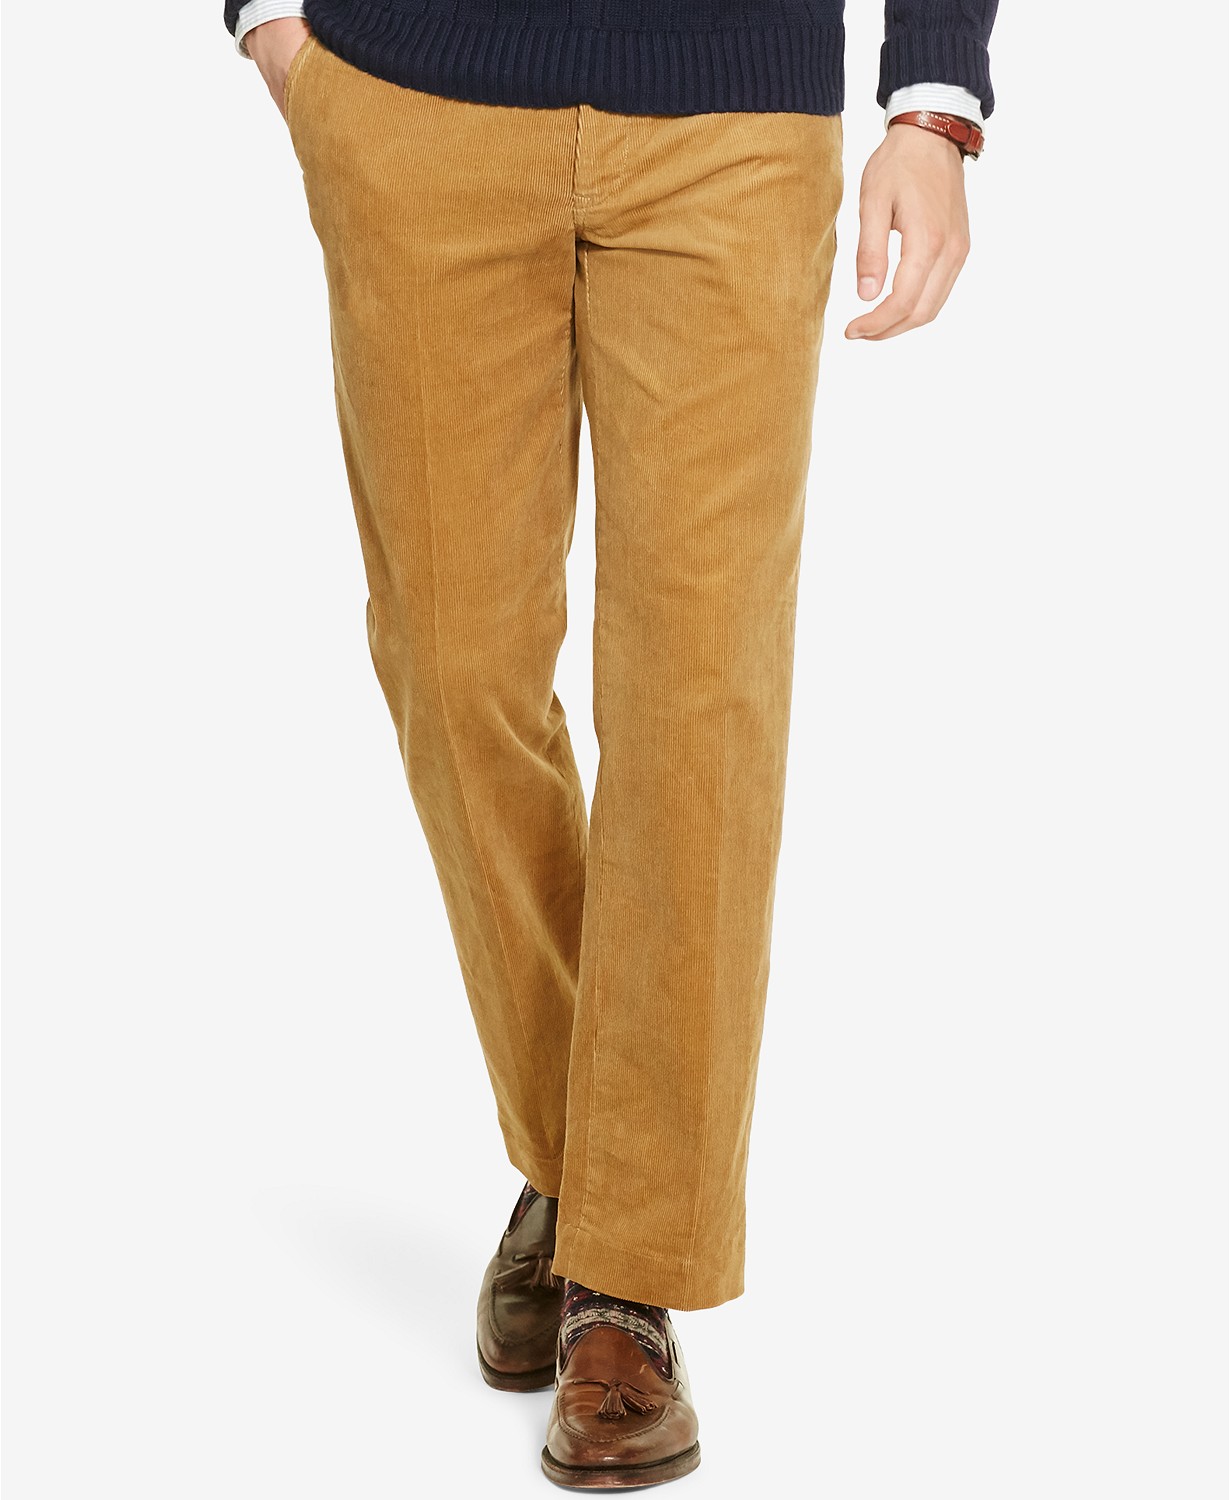 Ralph Lauren Men's Pants On Sale - Sears